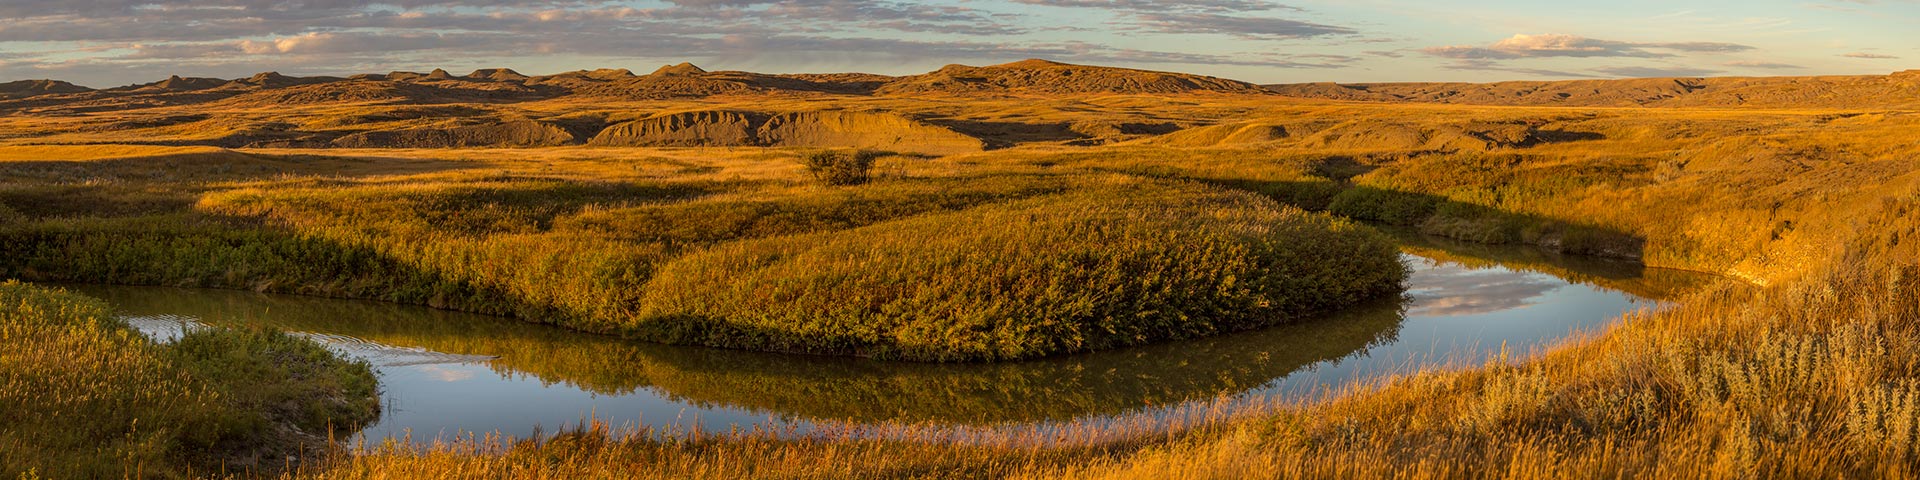 Scenic September landscape at West Block, in Grasslands National Park.